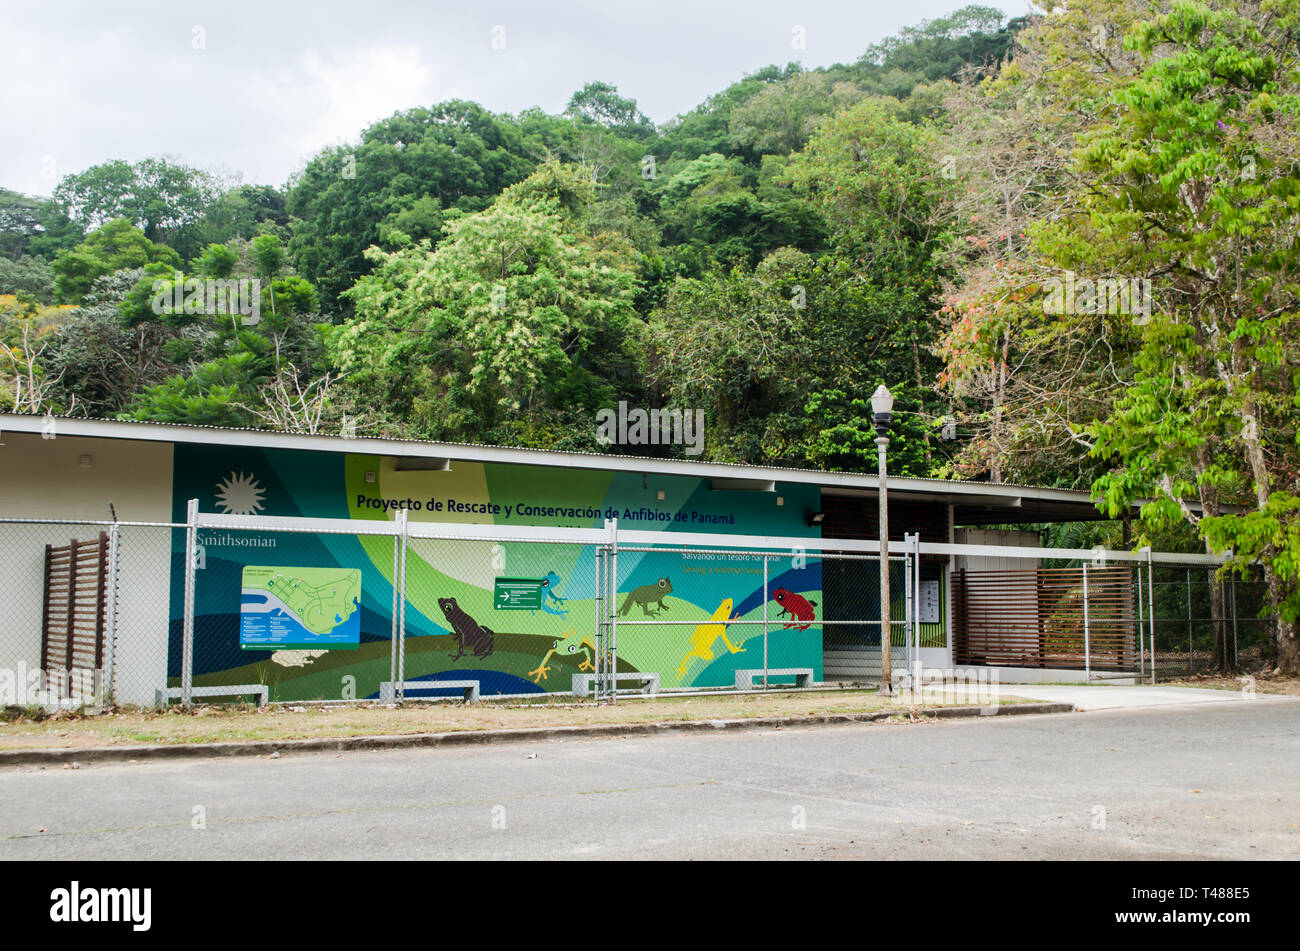 Proyecto de Rescate y Conservación de Anfibios de Panamá building in Gamboa Stock Photo